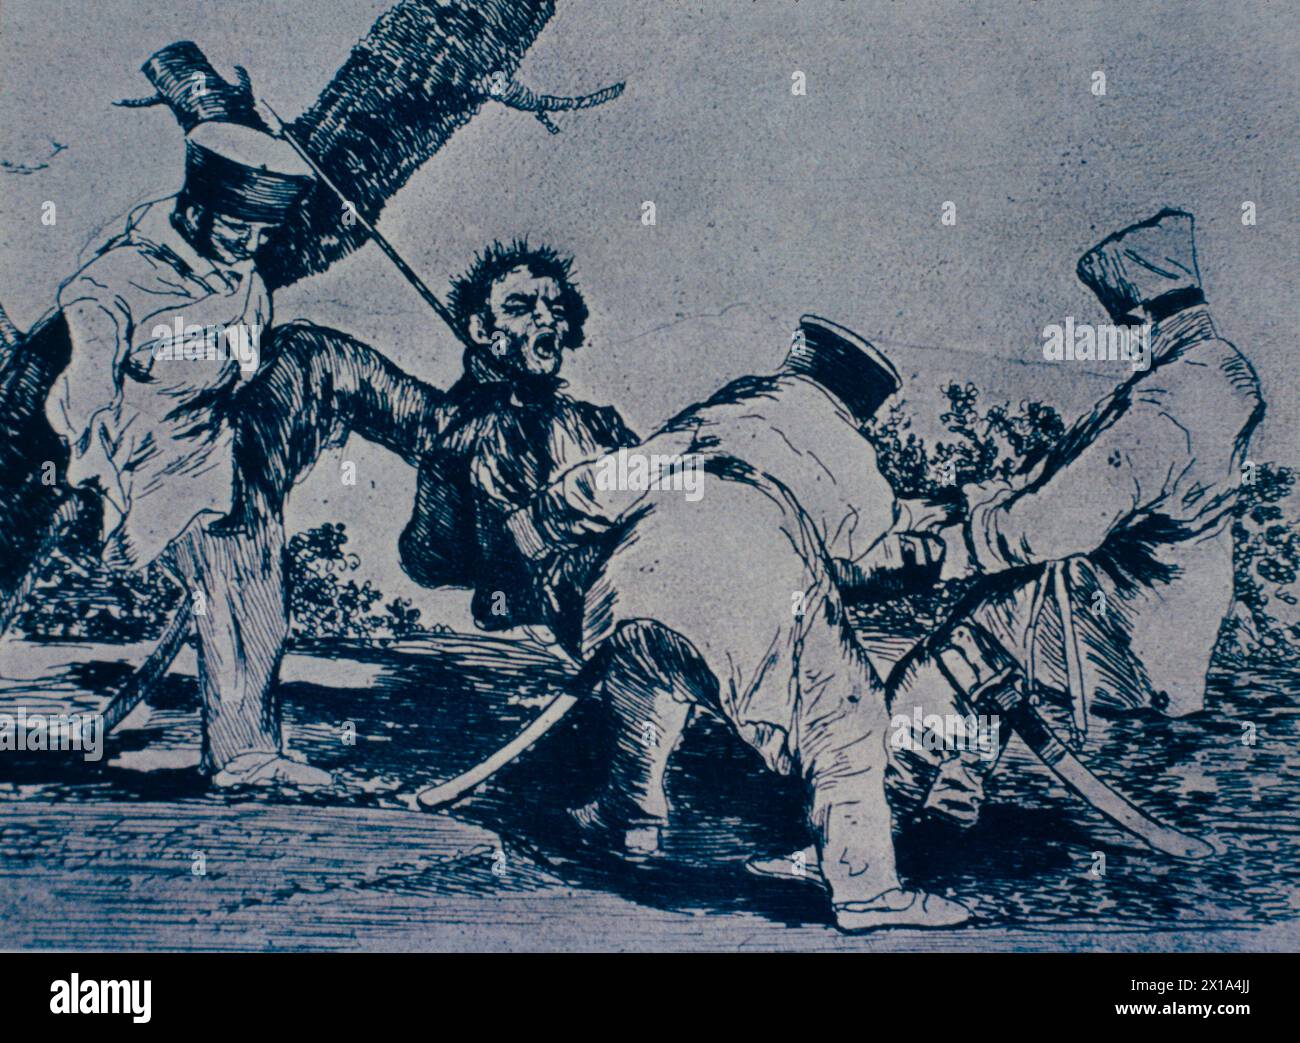 Pourquoi ?, invasion française en Espagne, gravure de l'artiste espagnol Francisco Goya, XIXe siècle Banque D'Images